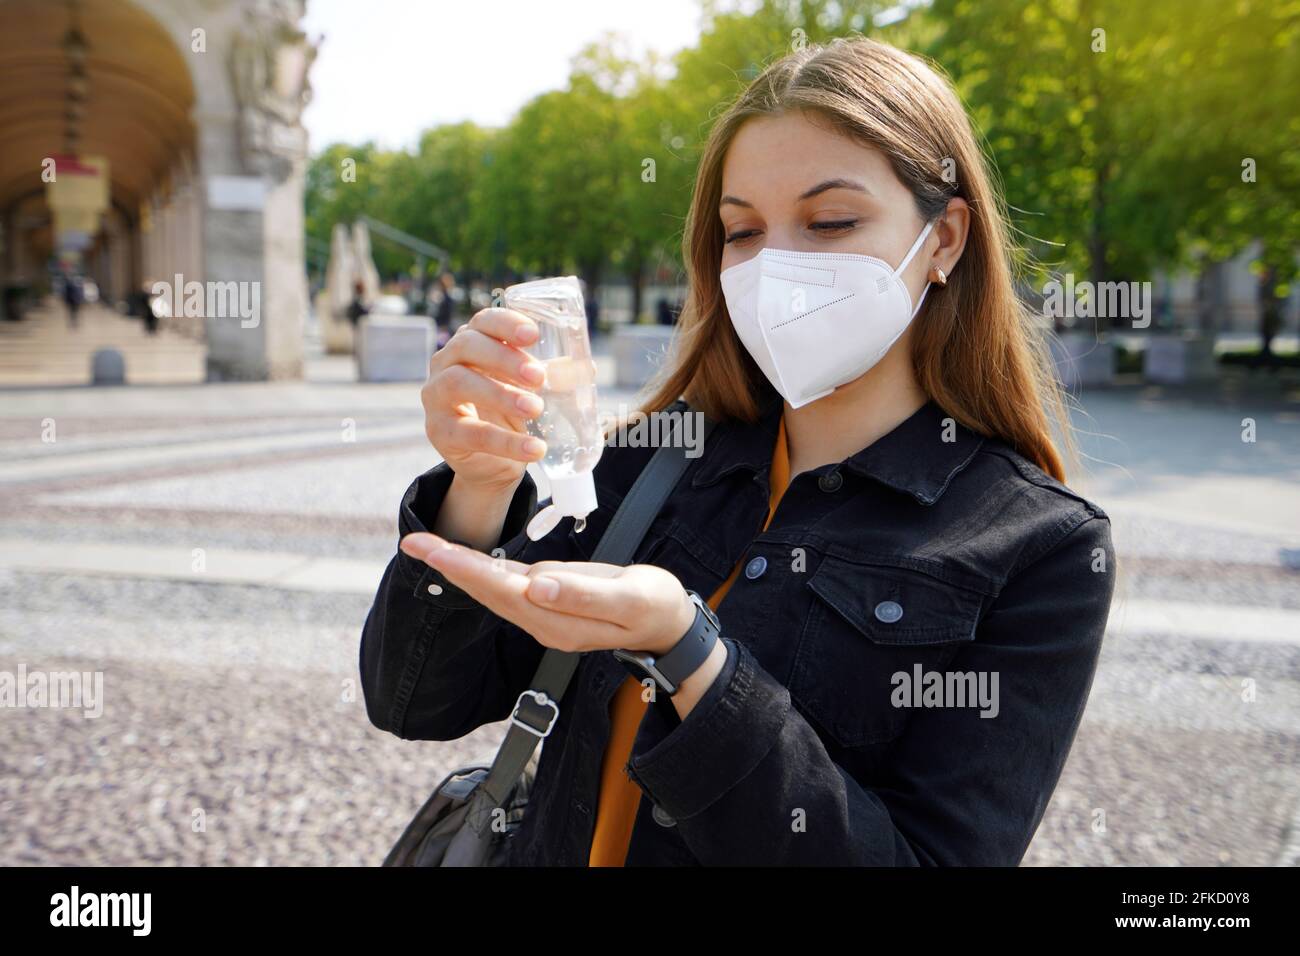 Porträt einer schönen jungen Frau, die eine KN95 FFP2 Schutzmaske trägt und Alkoholgel verwendet, um ihre Hände auf der Straße der Stadt zu desinfizieren. Hygiene und Gesundheitsversorgung con Stockfoto